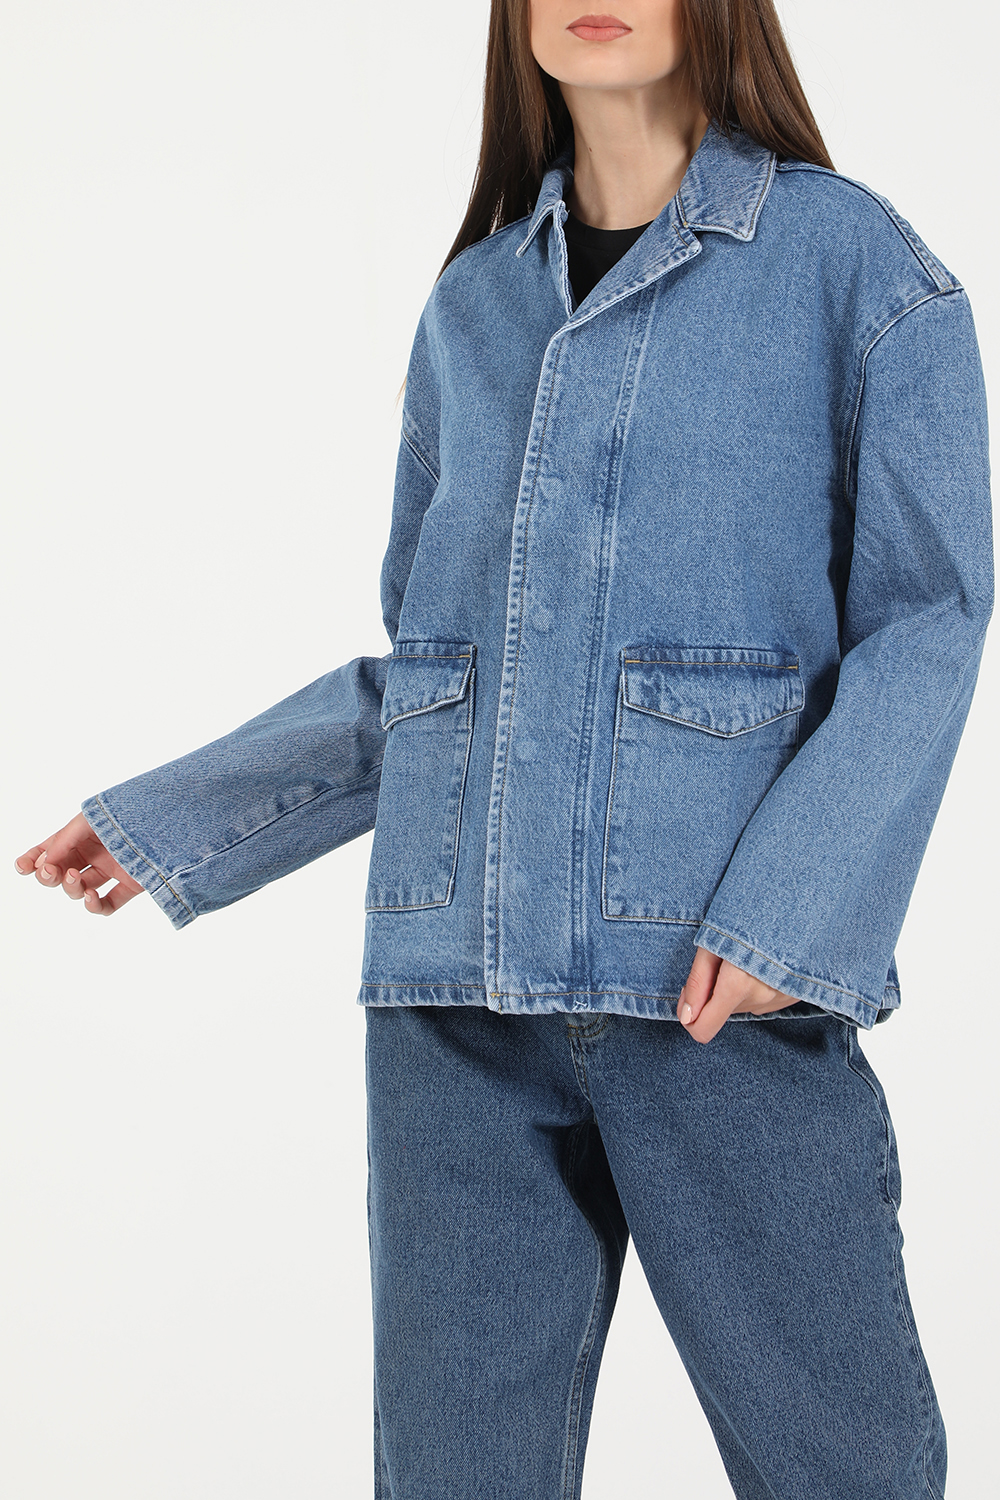 Γυναικεία/Ρούχα/Πανωφόρια/Τζάκετς NA-KD - Γυναικείο jean jacket NA-KD PATCH POCKET DENIM μπλε